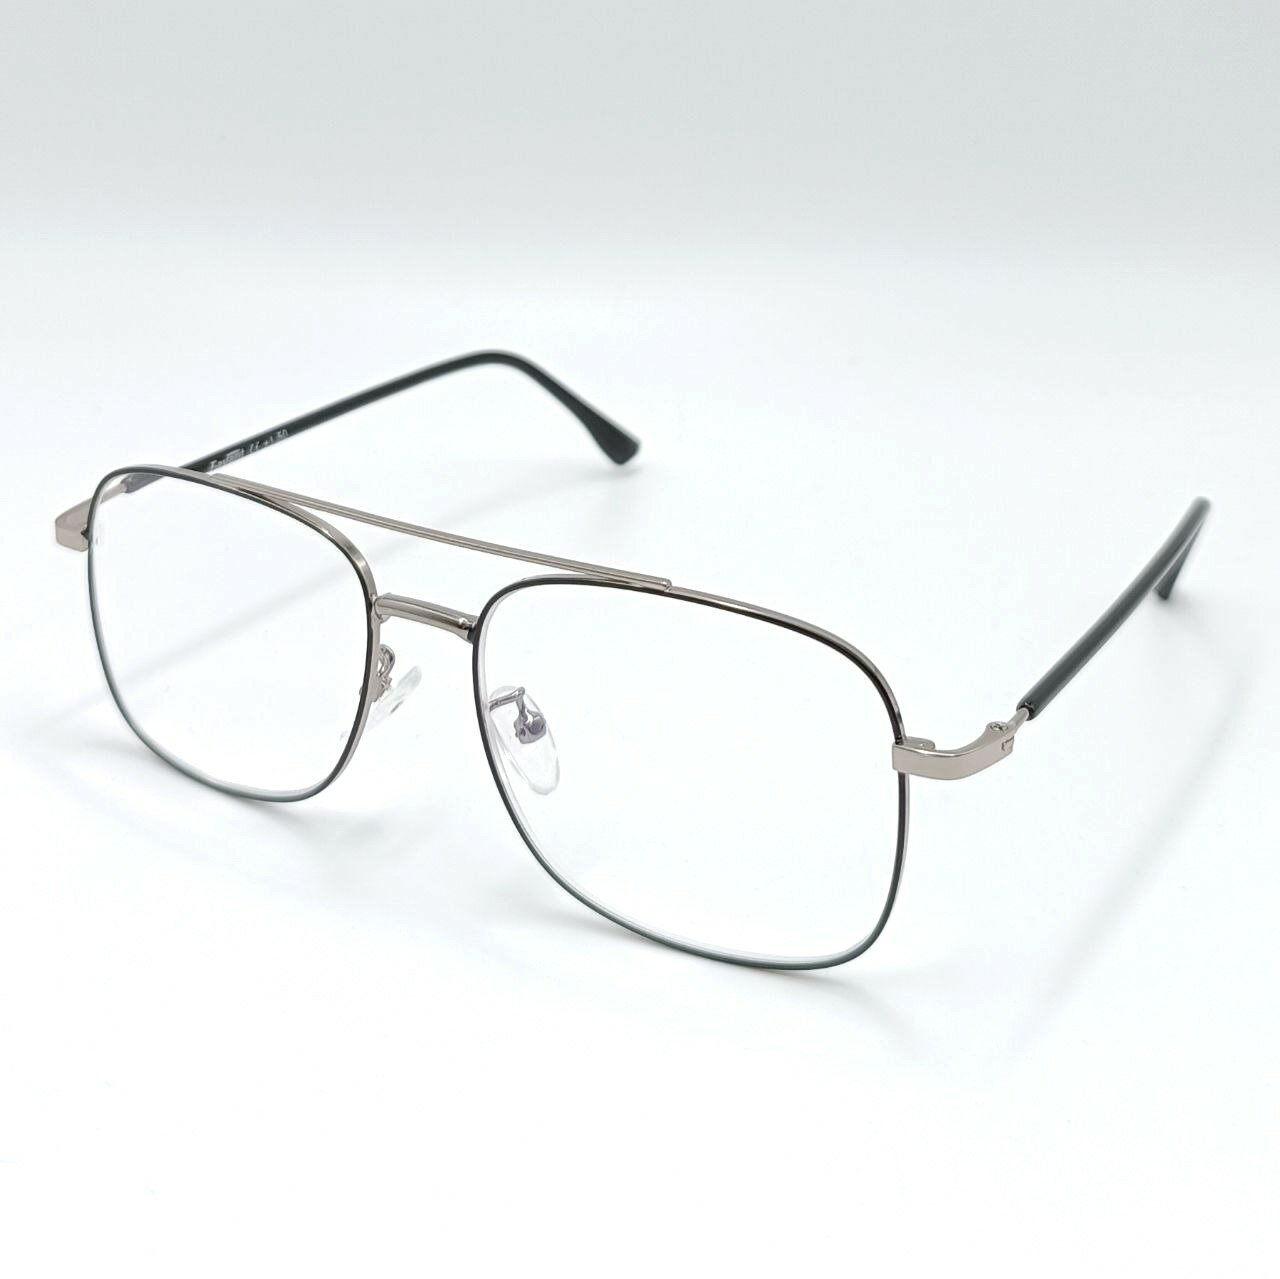 Favarit FVR 7700 - мужские очки с диоптриями -2.00